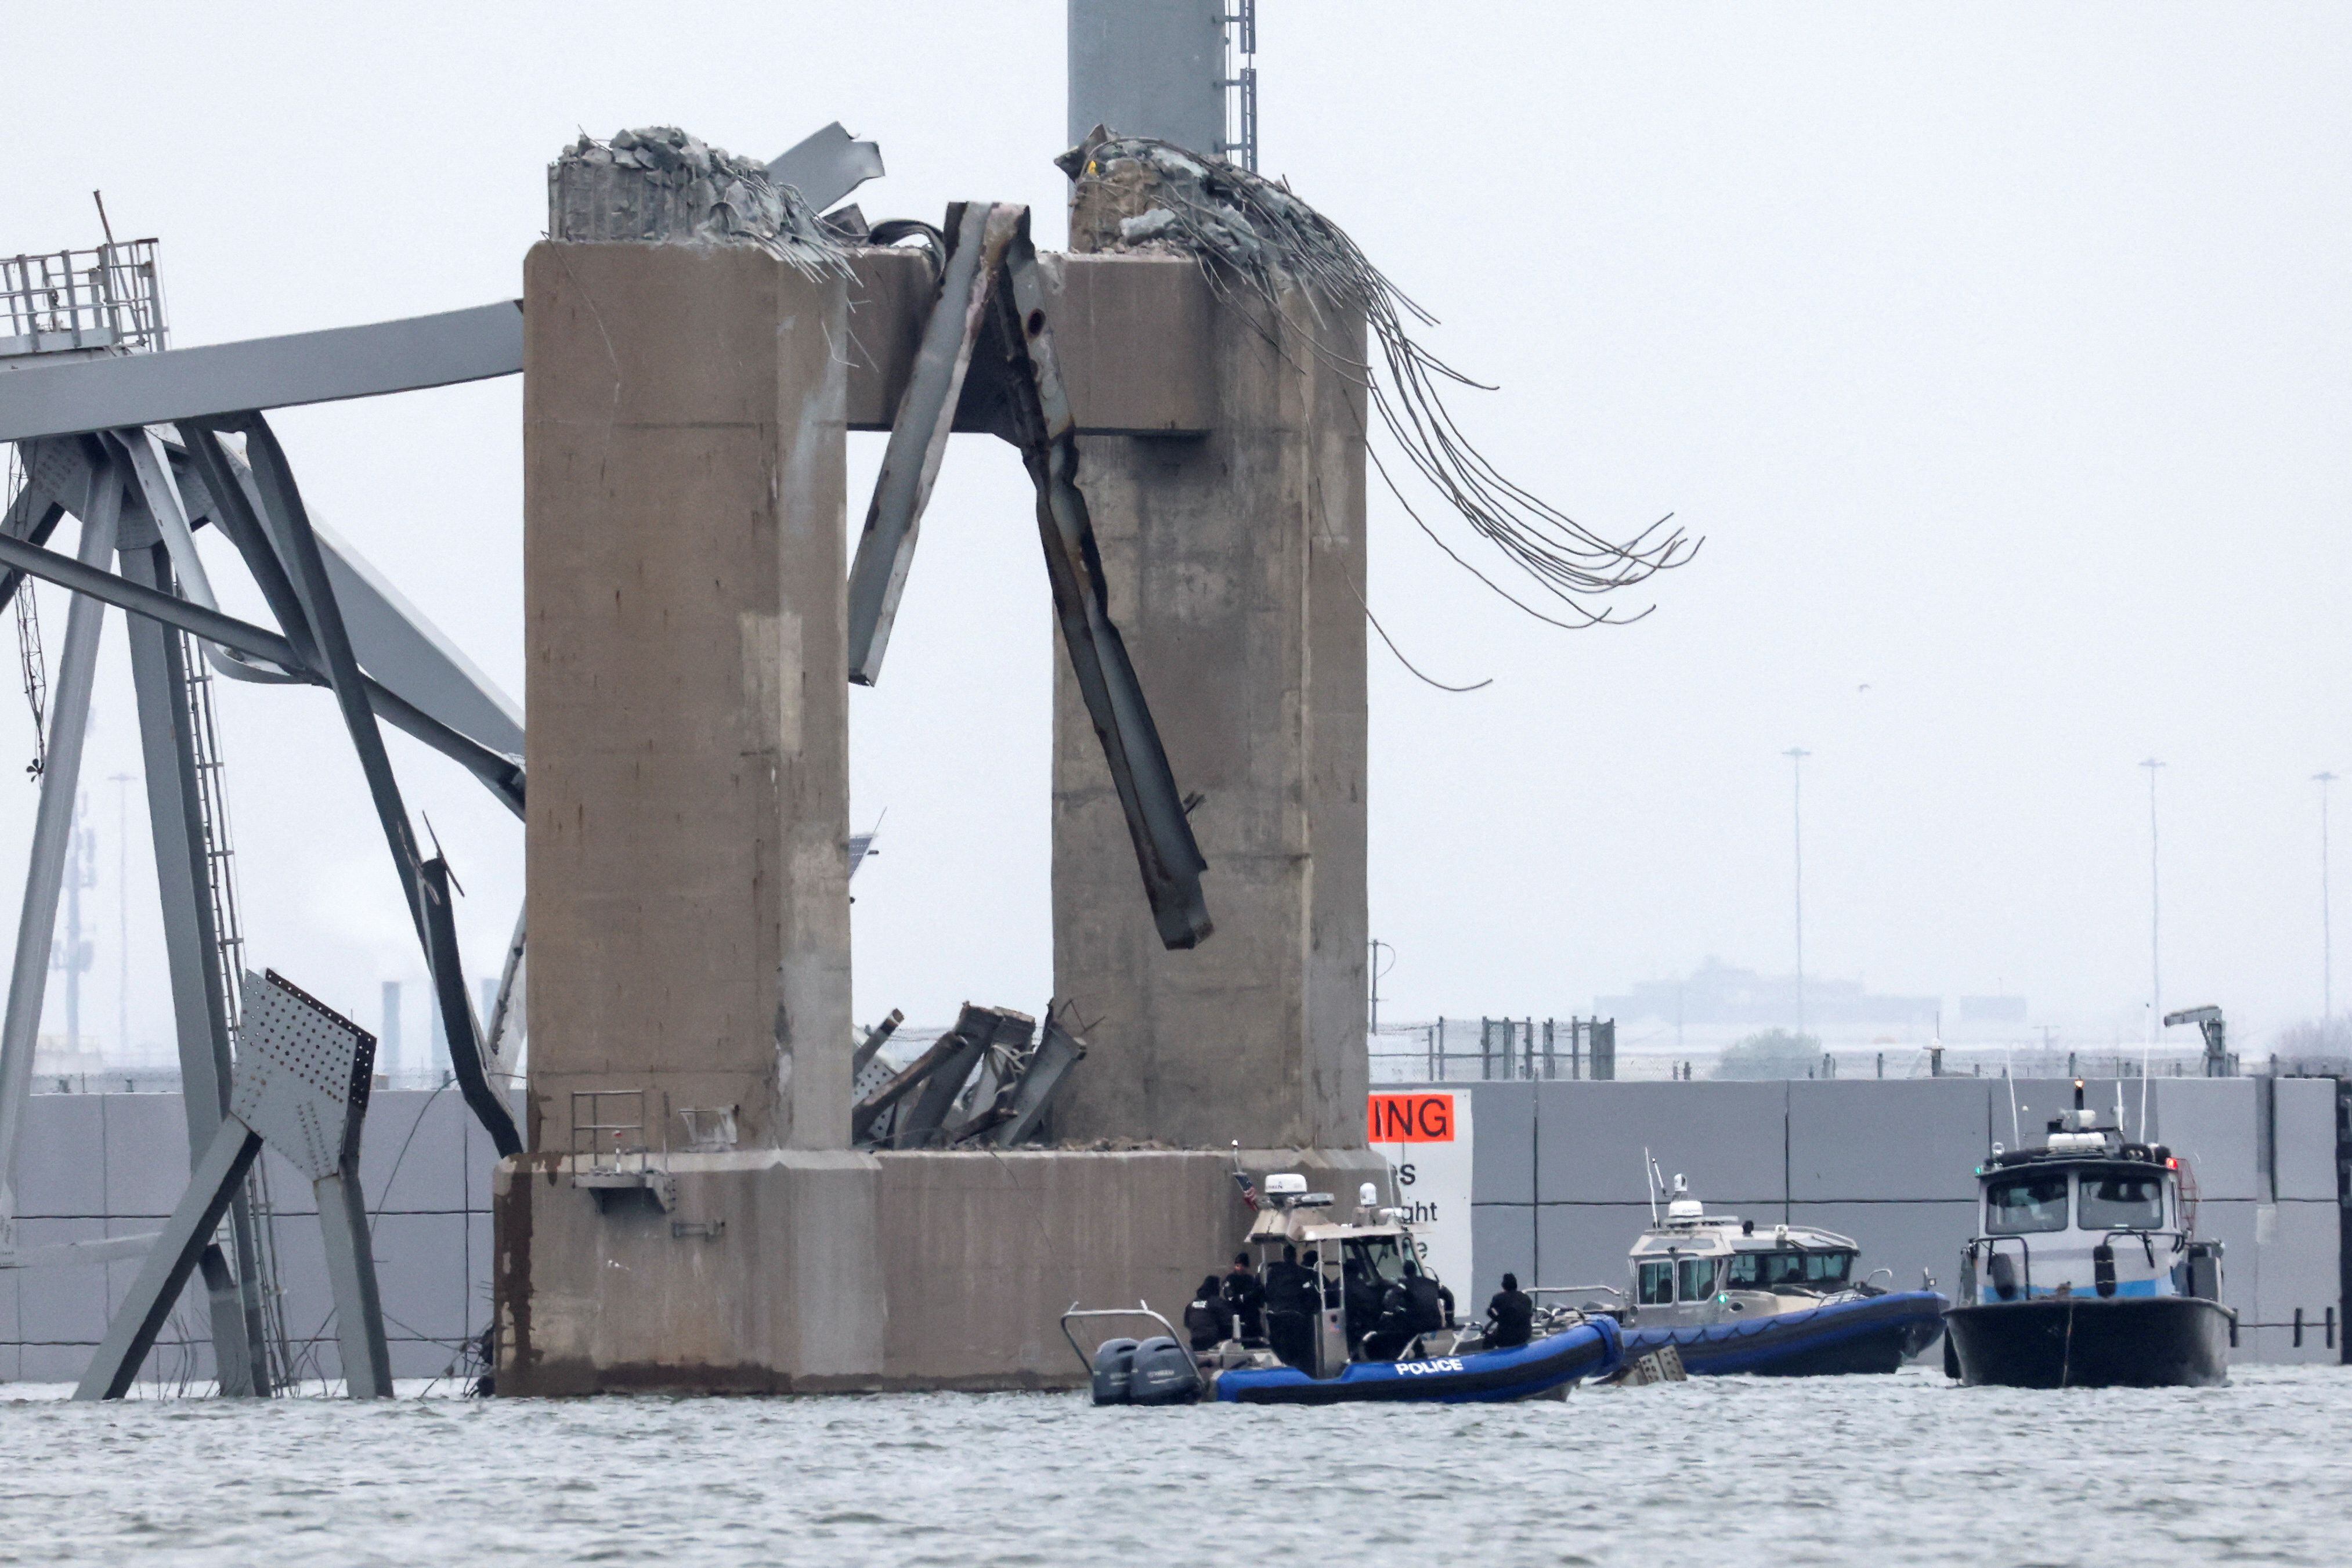 Los operadores del carguero Dali emitieron una llamada de emergencia diciendo que el barco había perdido energía momentos antes del accidente (REUTERS/Mike Segar)